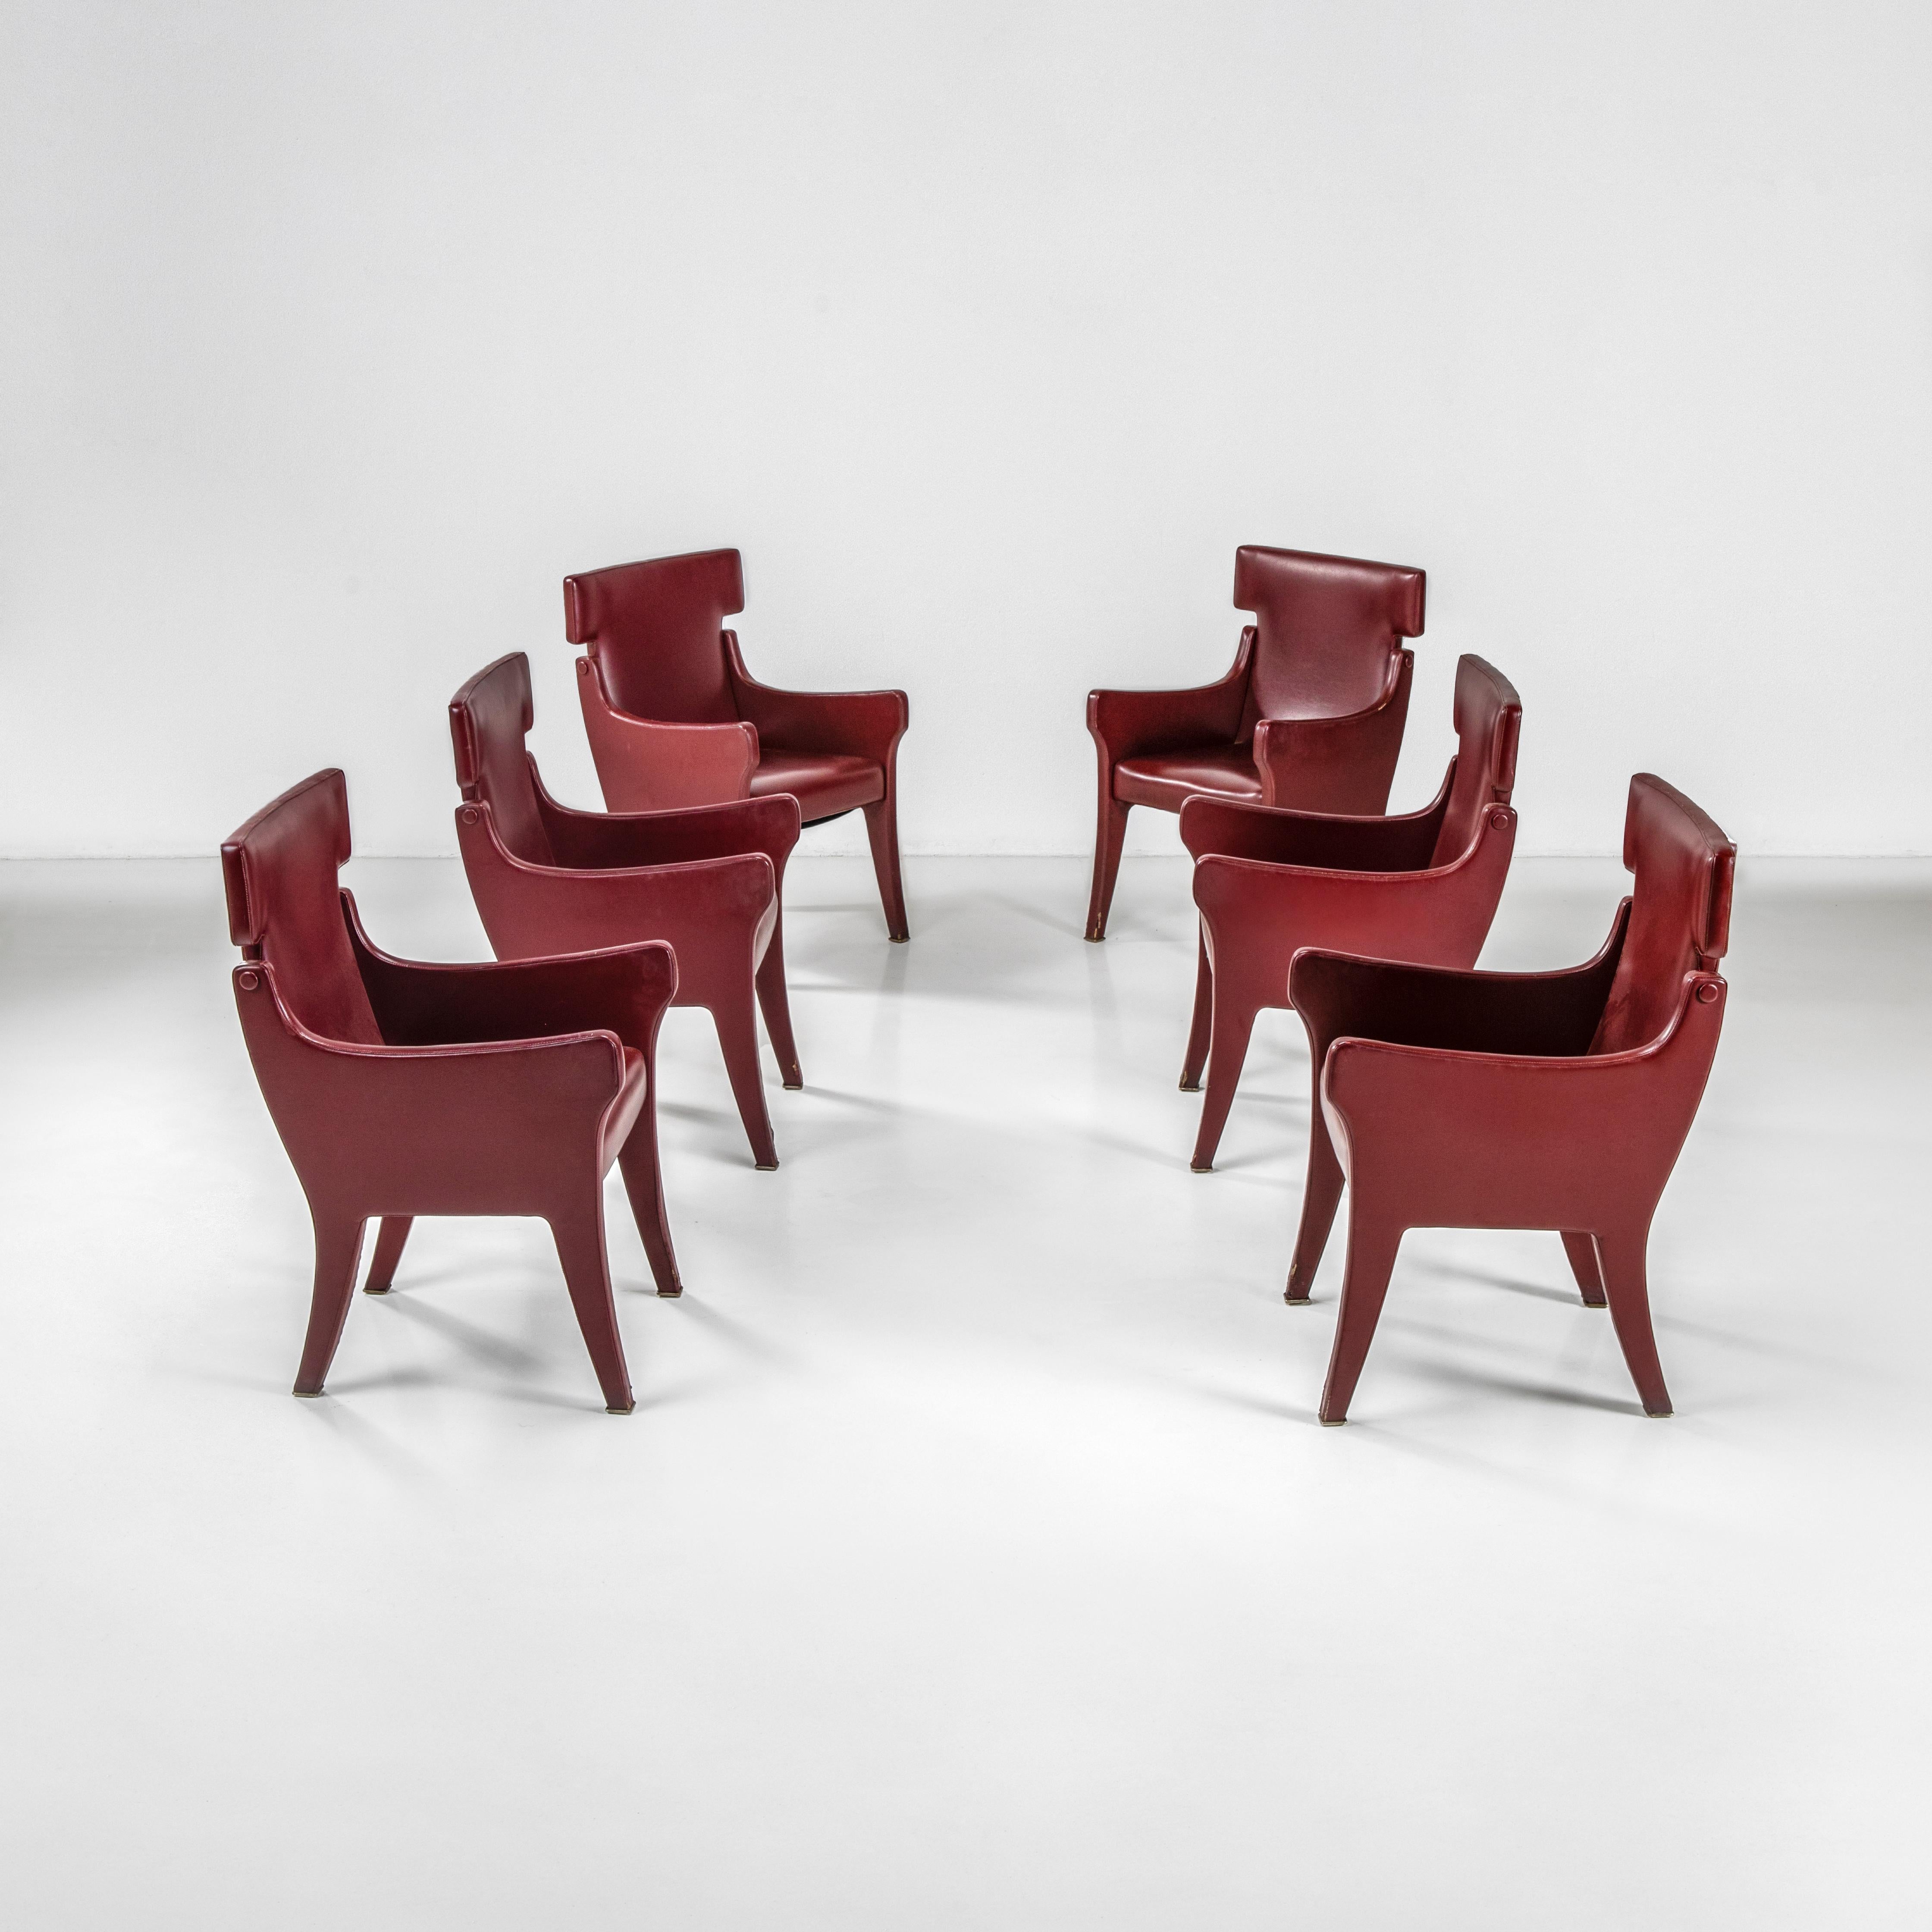 Ces six rares fauteuils rembourrés de modèle P10 sont une création élégante et décorative d'Ignazio Gardella, l'un des maîtres du design italien du XXe siècle. Les six fauteuils sont recouverts de skaï, un cuir vinyle synthétique très utilisé à